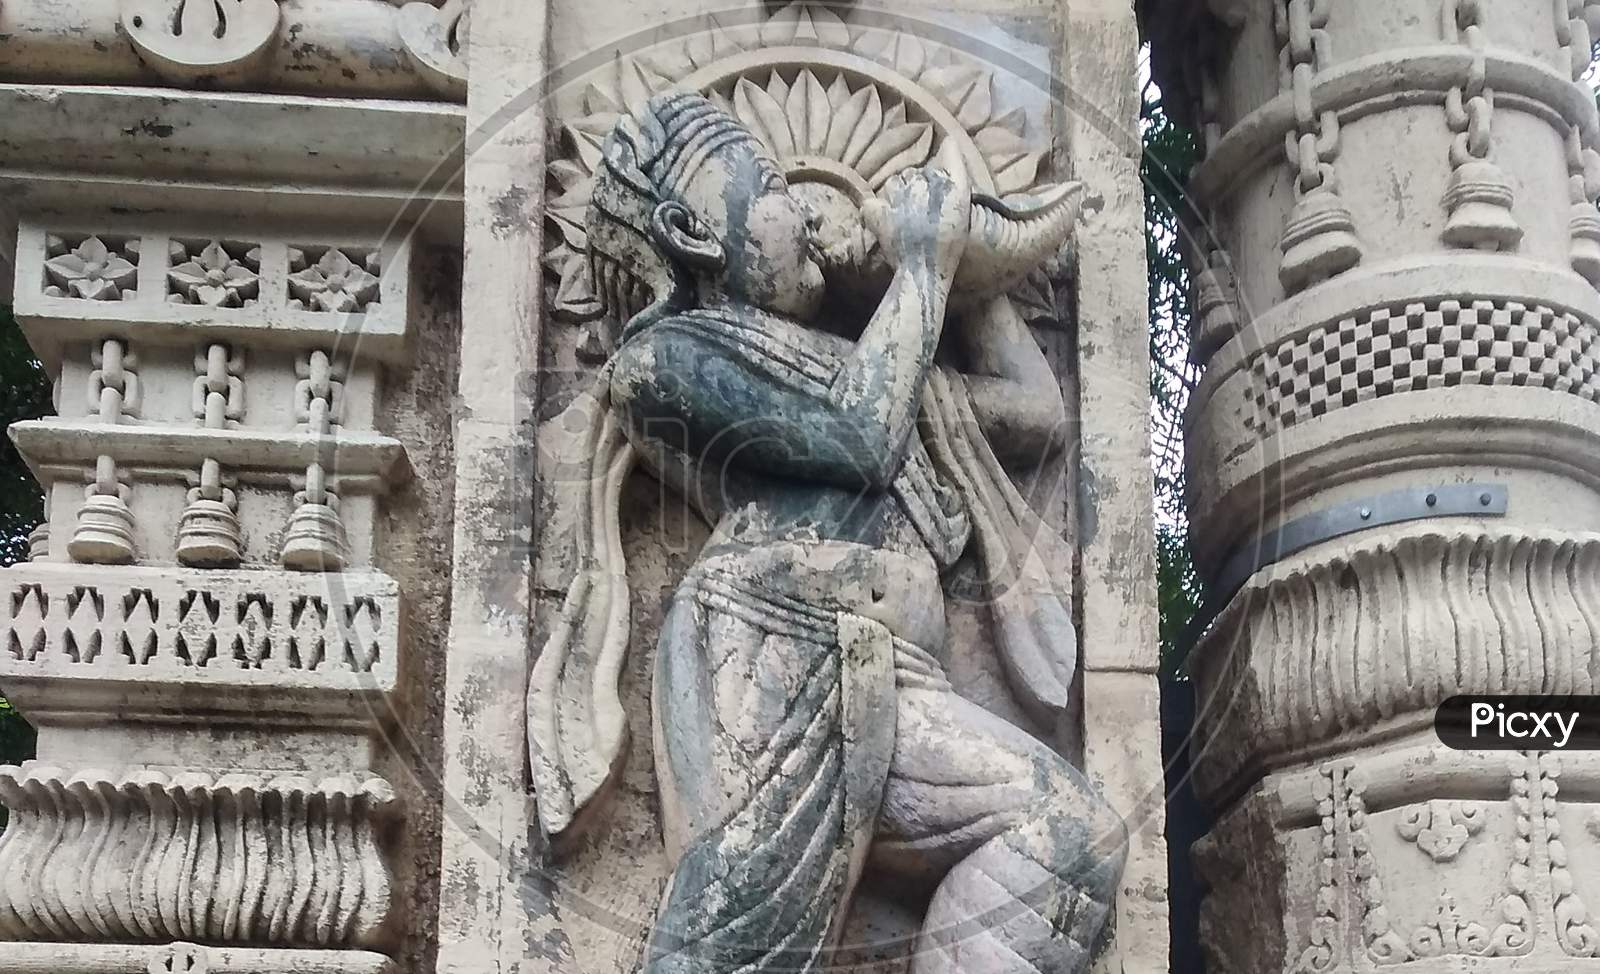 Old Krishna statue